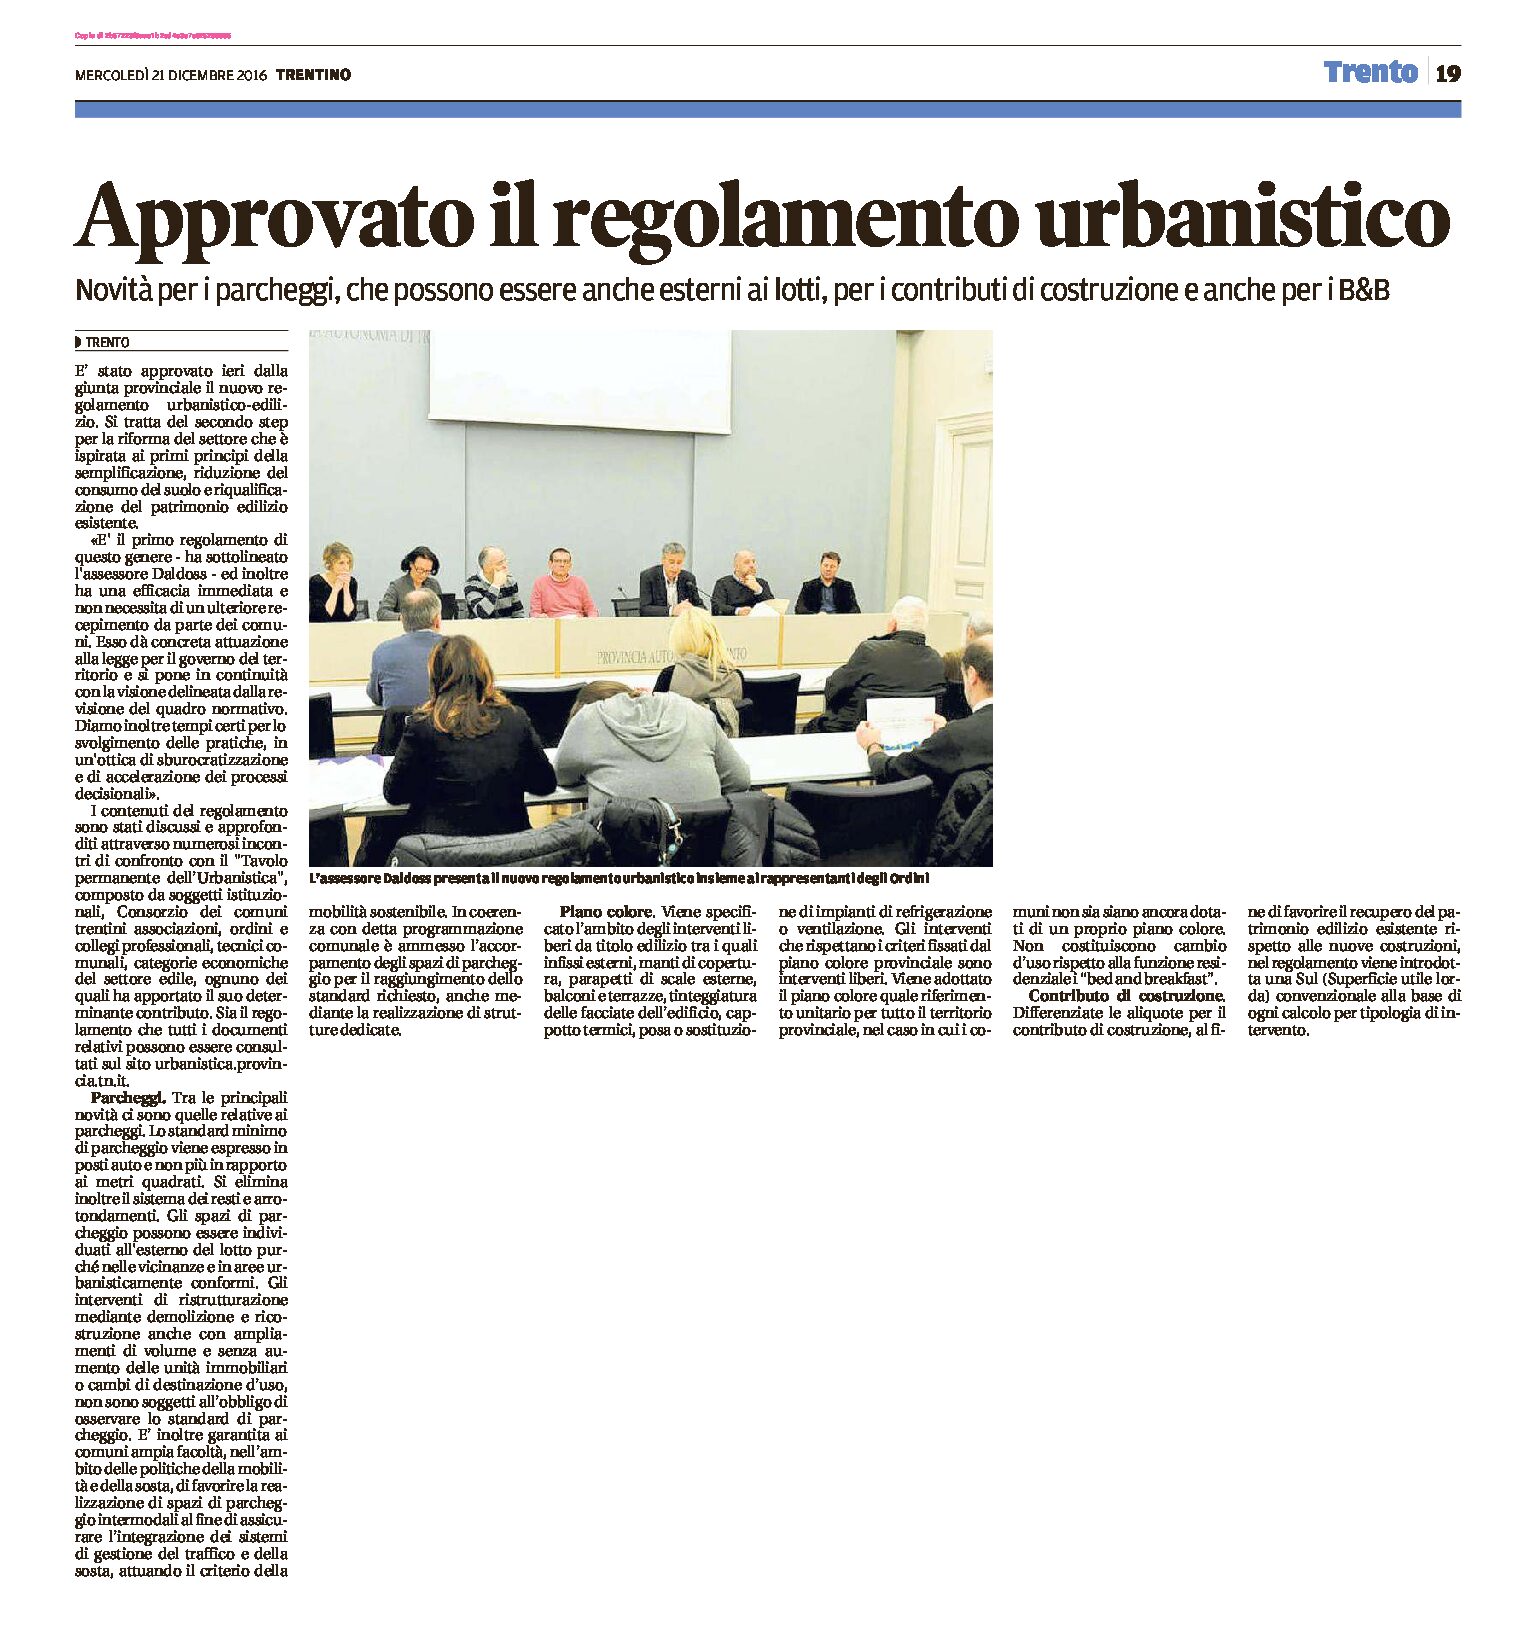 Trentino: approvato il regolamento urbanistico